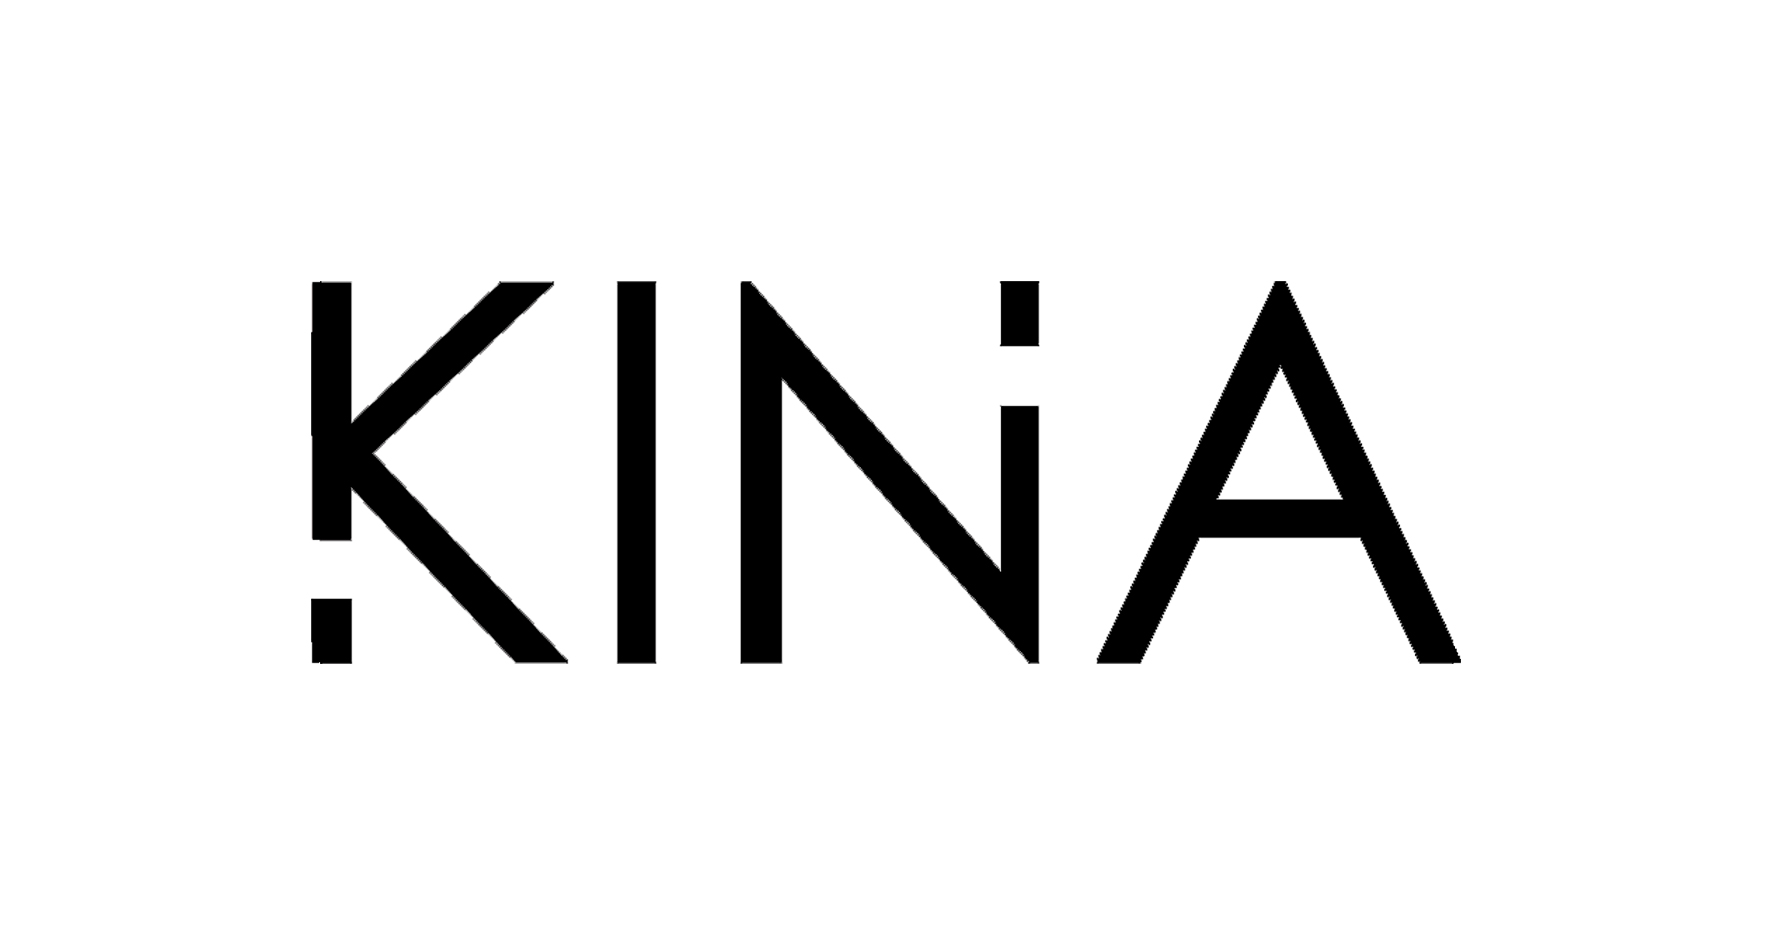 KINA Одежда и аксессуары, купить онлайн, KINA в универмаге Bolshoy